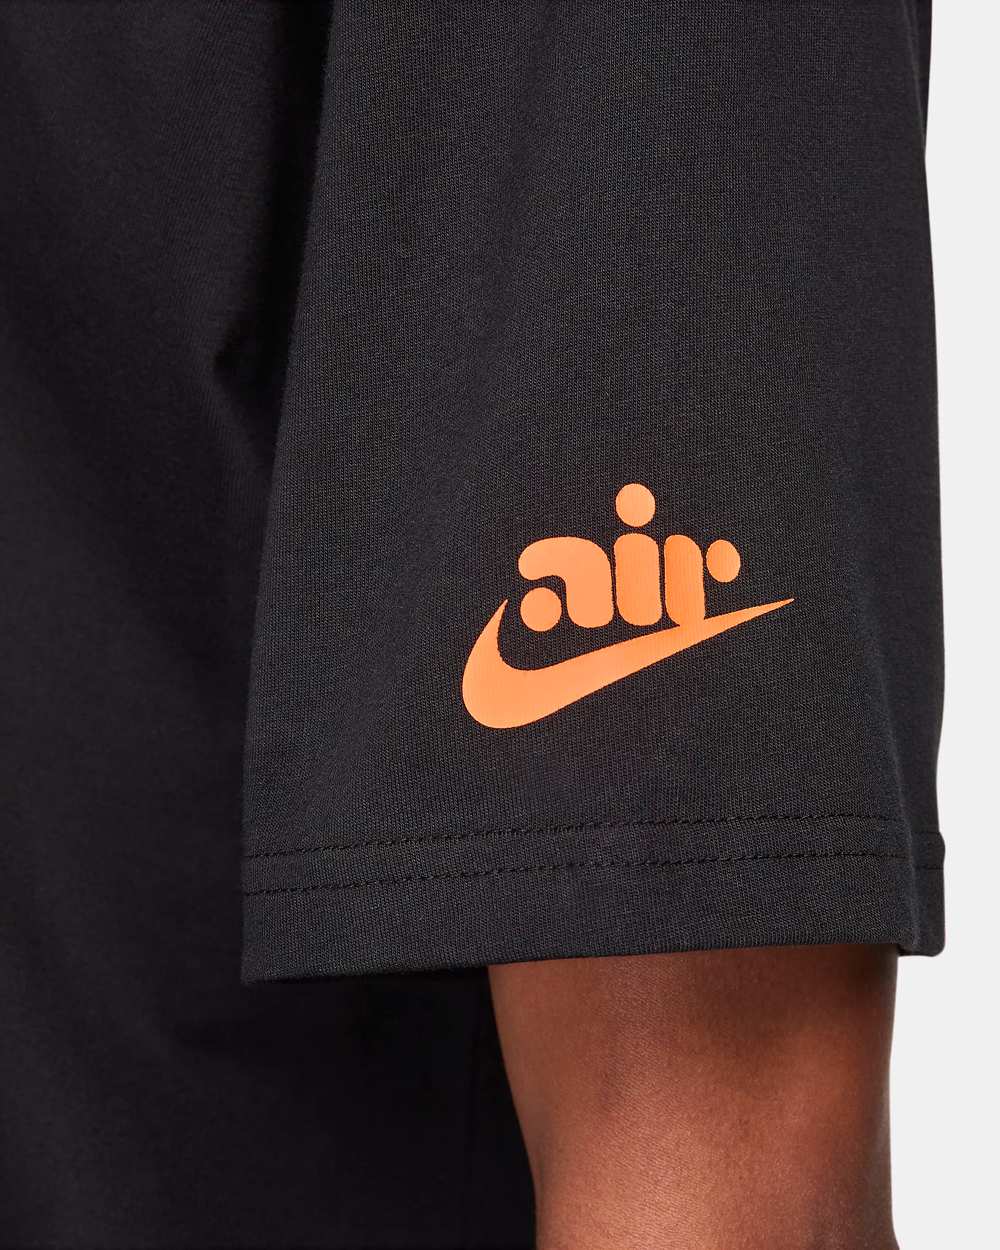 Nike-Air-Max-Plus-Drift-All-Day-Shirt-4